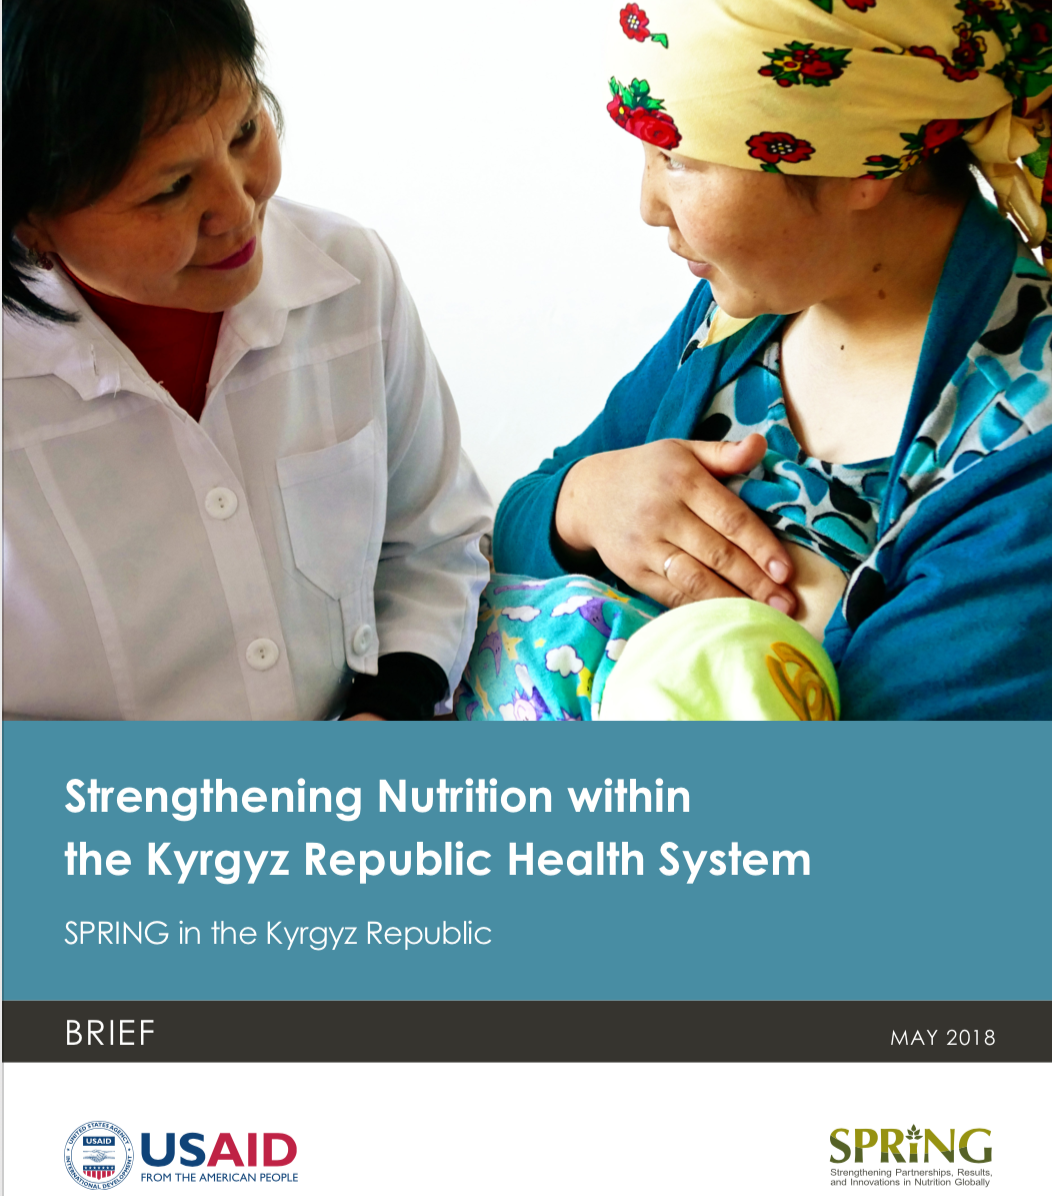 Photo: SPRING_Strenerening Nutrition dans le système de santé de la République kirghize_5.2018 cover